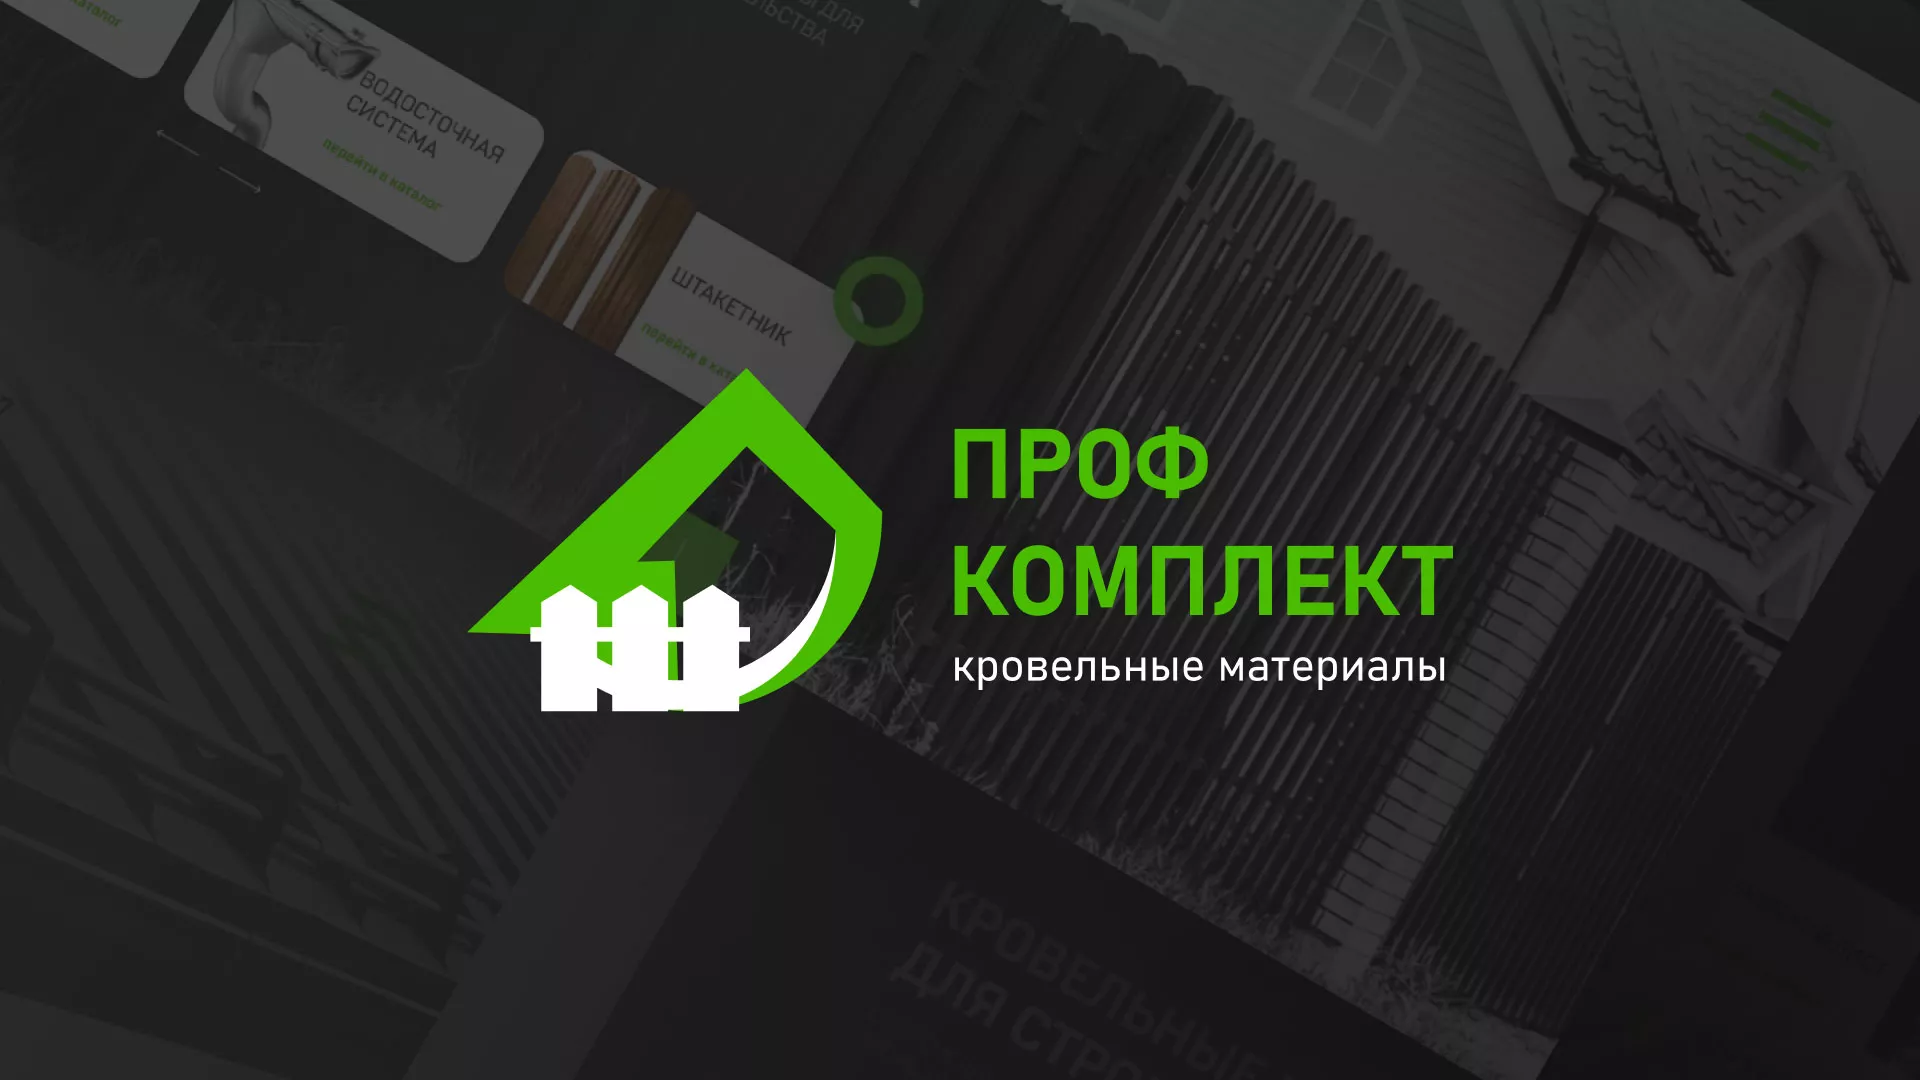 Создание сайта компании «Проф Комплект» в Шебекино